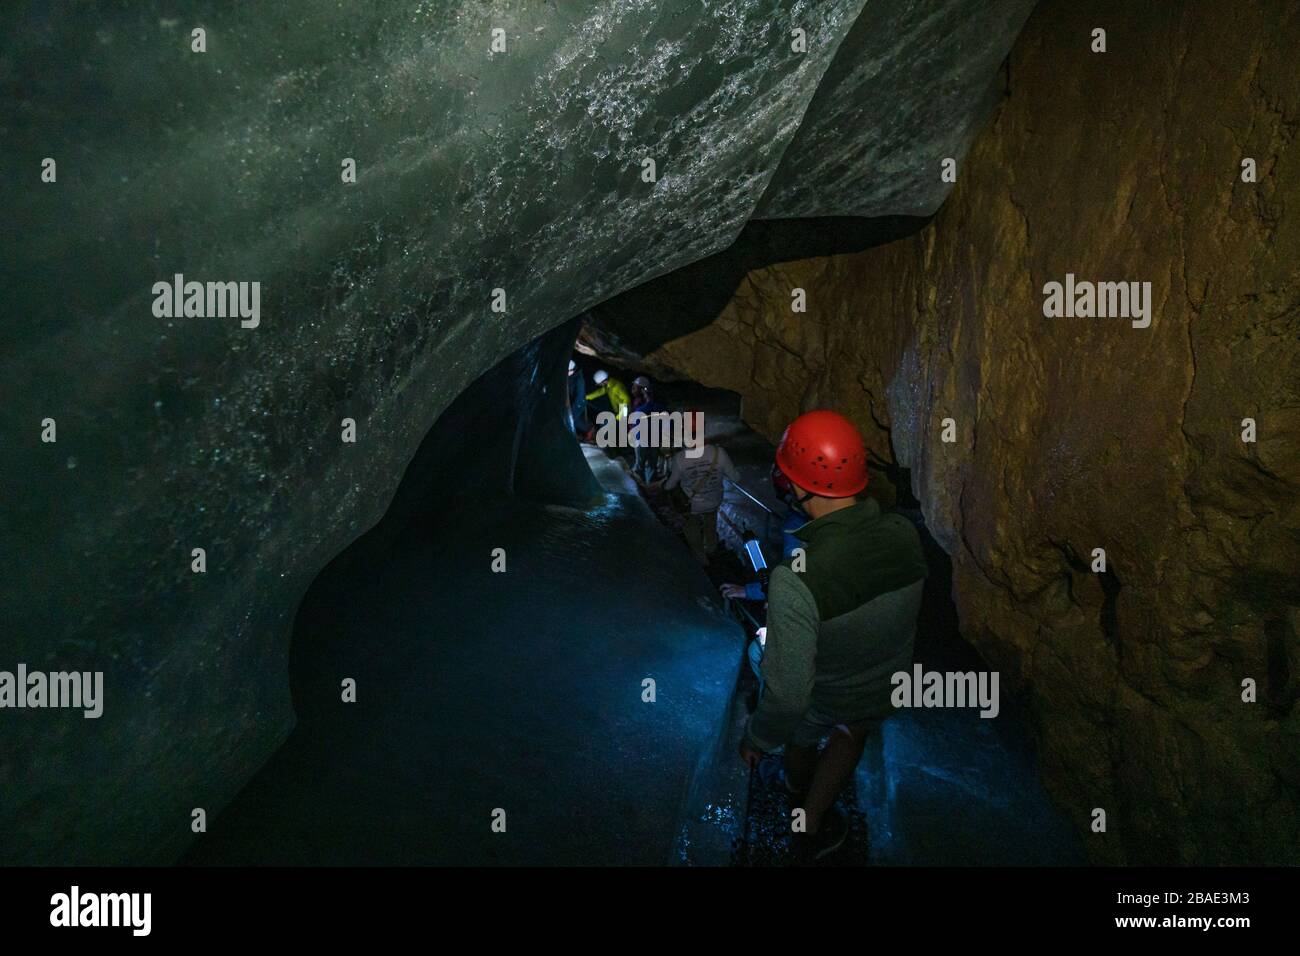 La grotte de glace Schellenberger à Untersberg, près de Marktschellenberg, est la plus grande grotte de glace d'Allemagne dans la terre de Berchtesgadener Banque D'Images